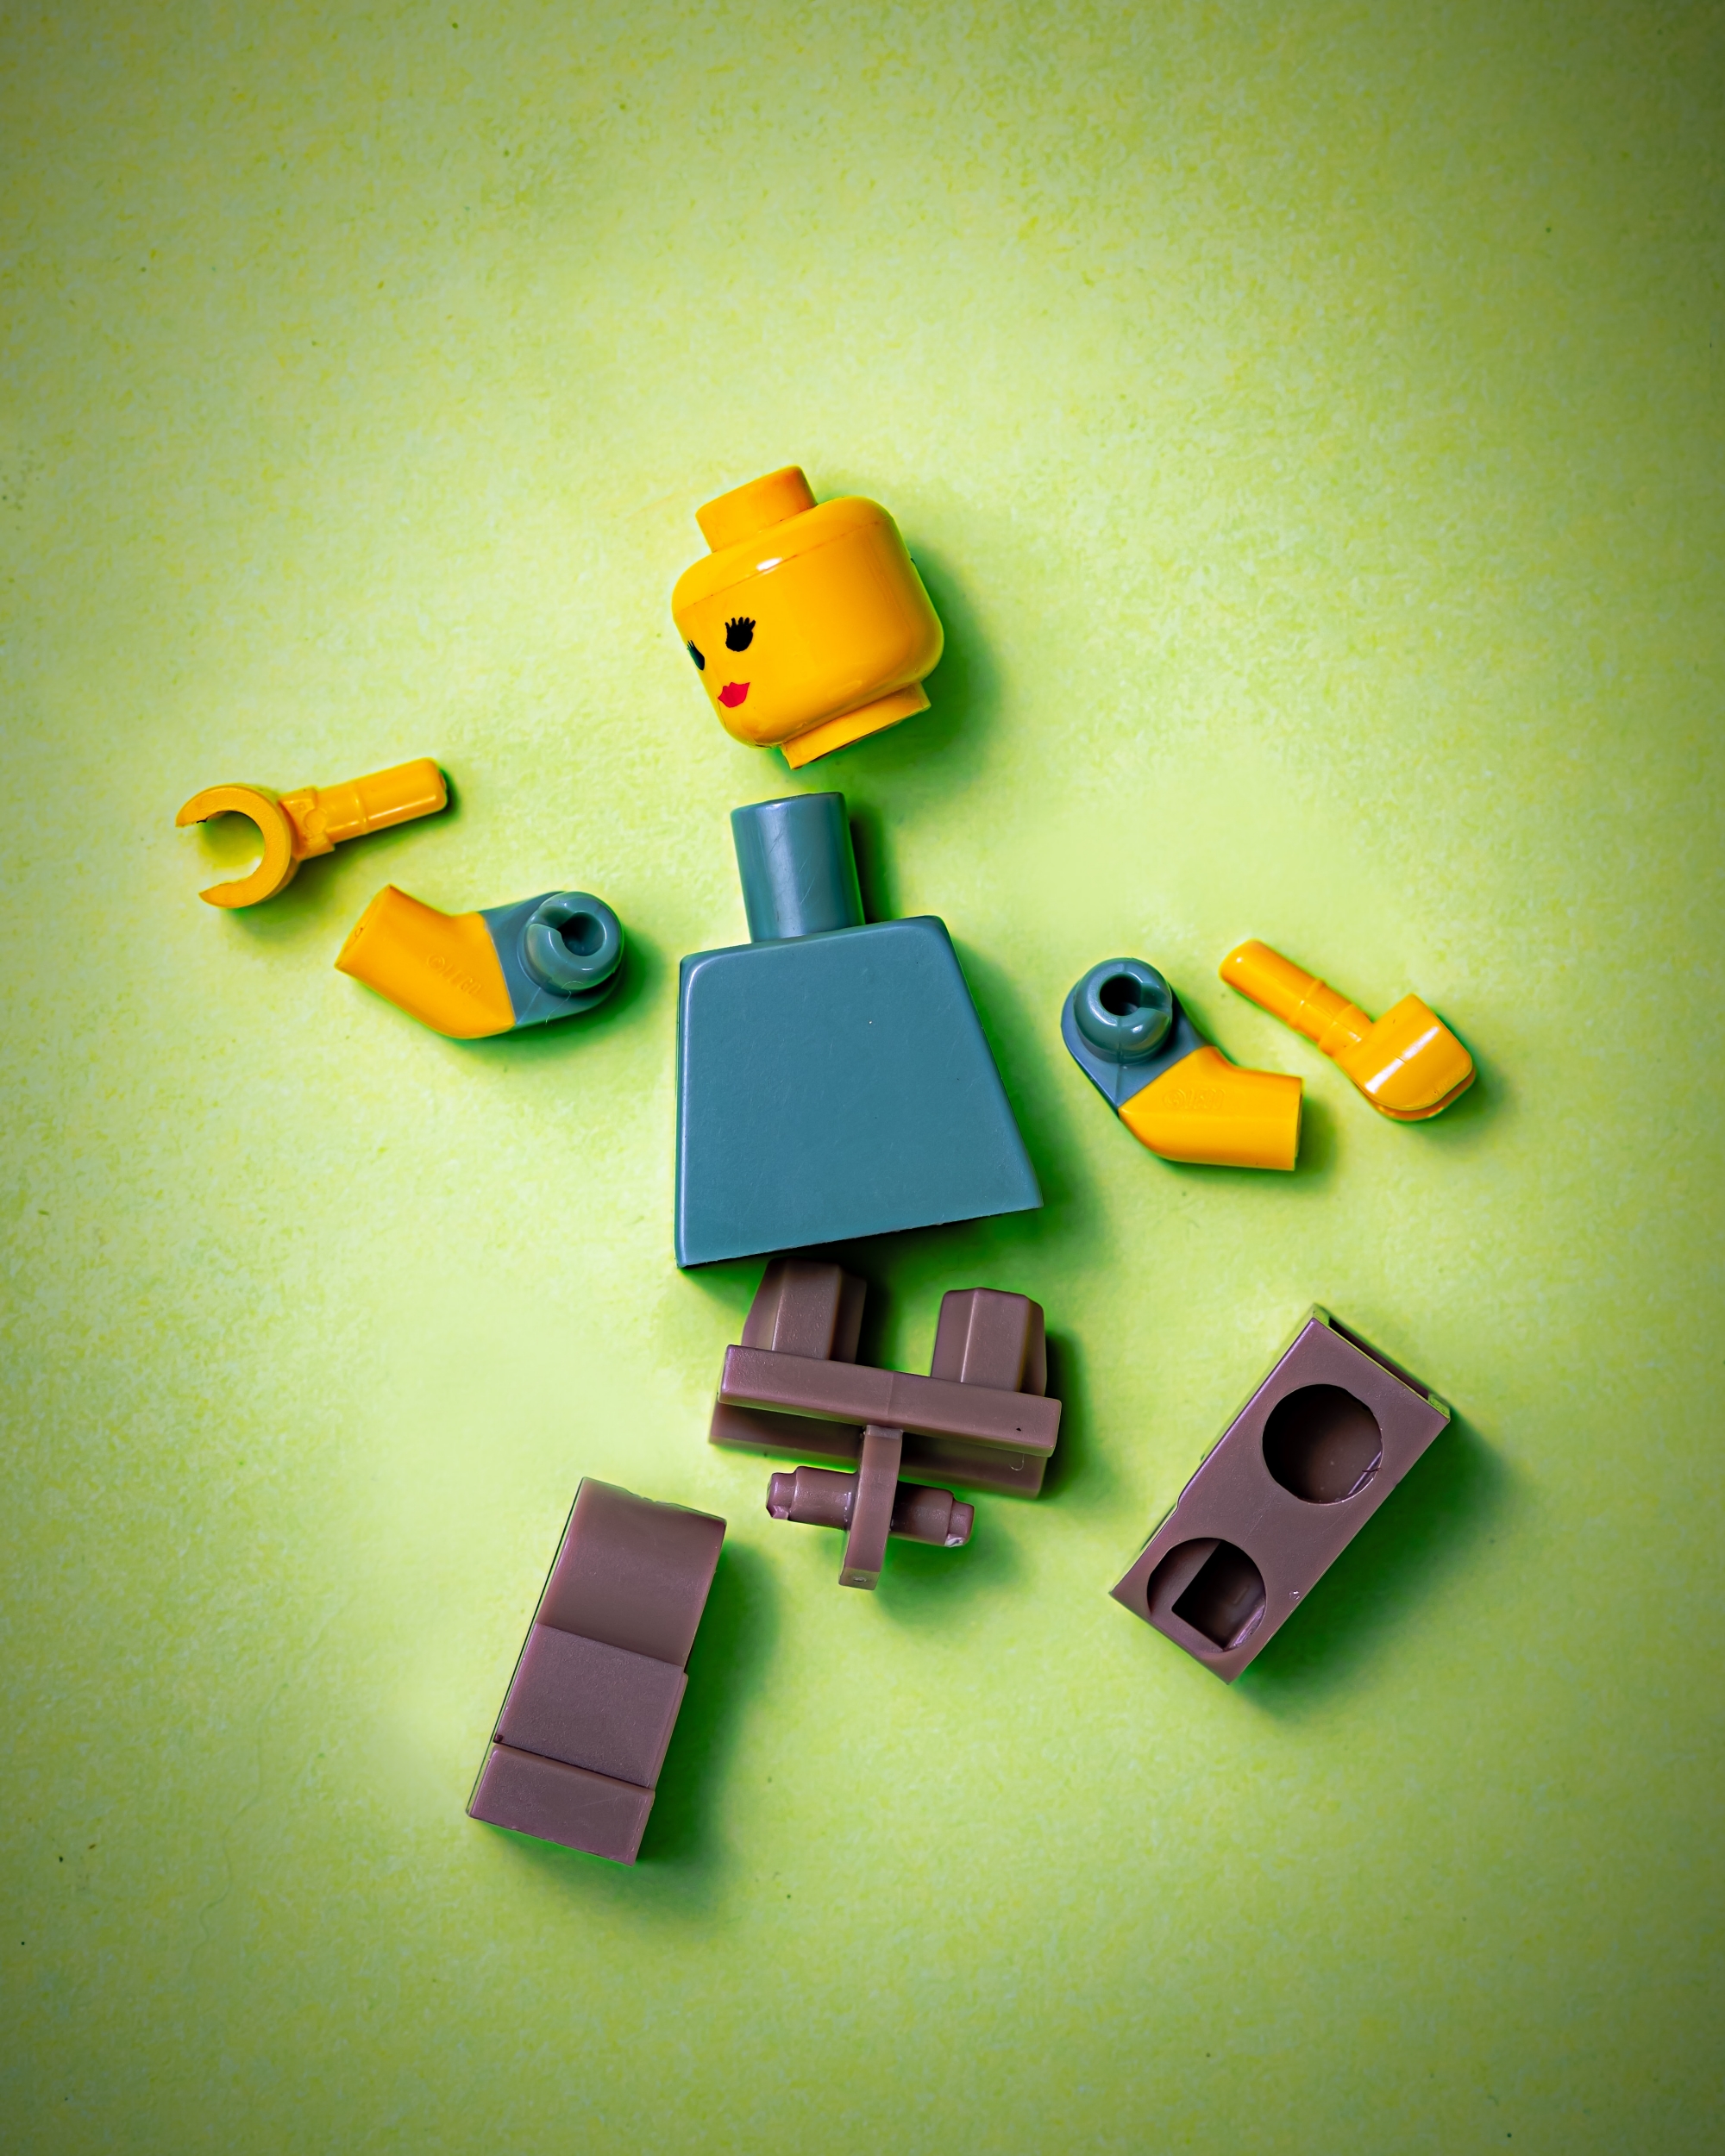 Disassembled LEGO minifigure